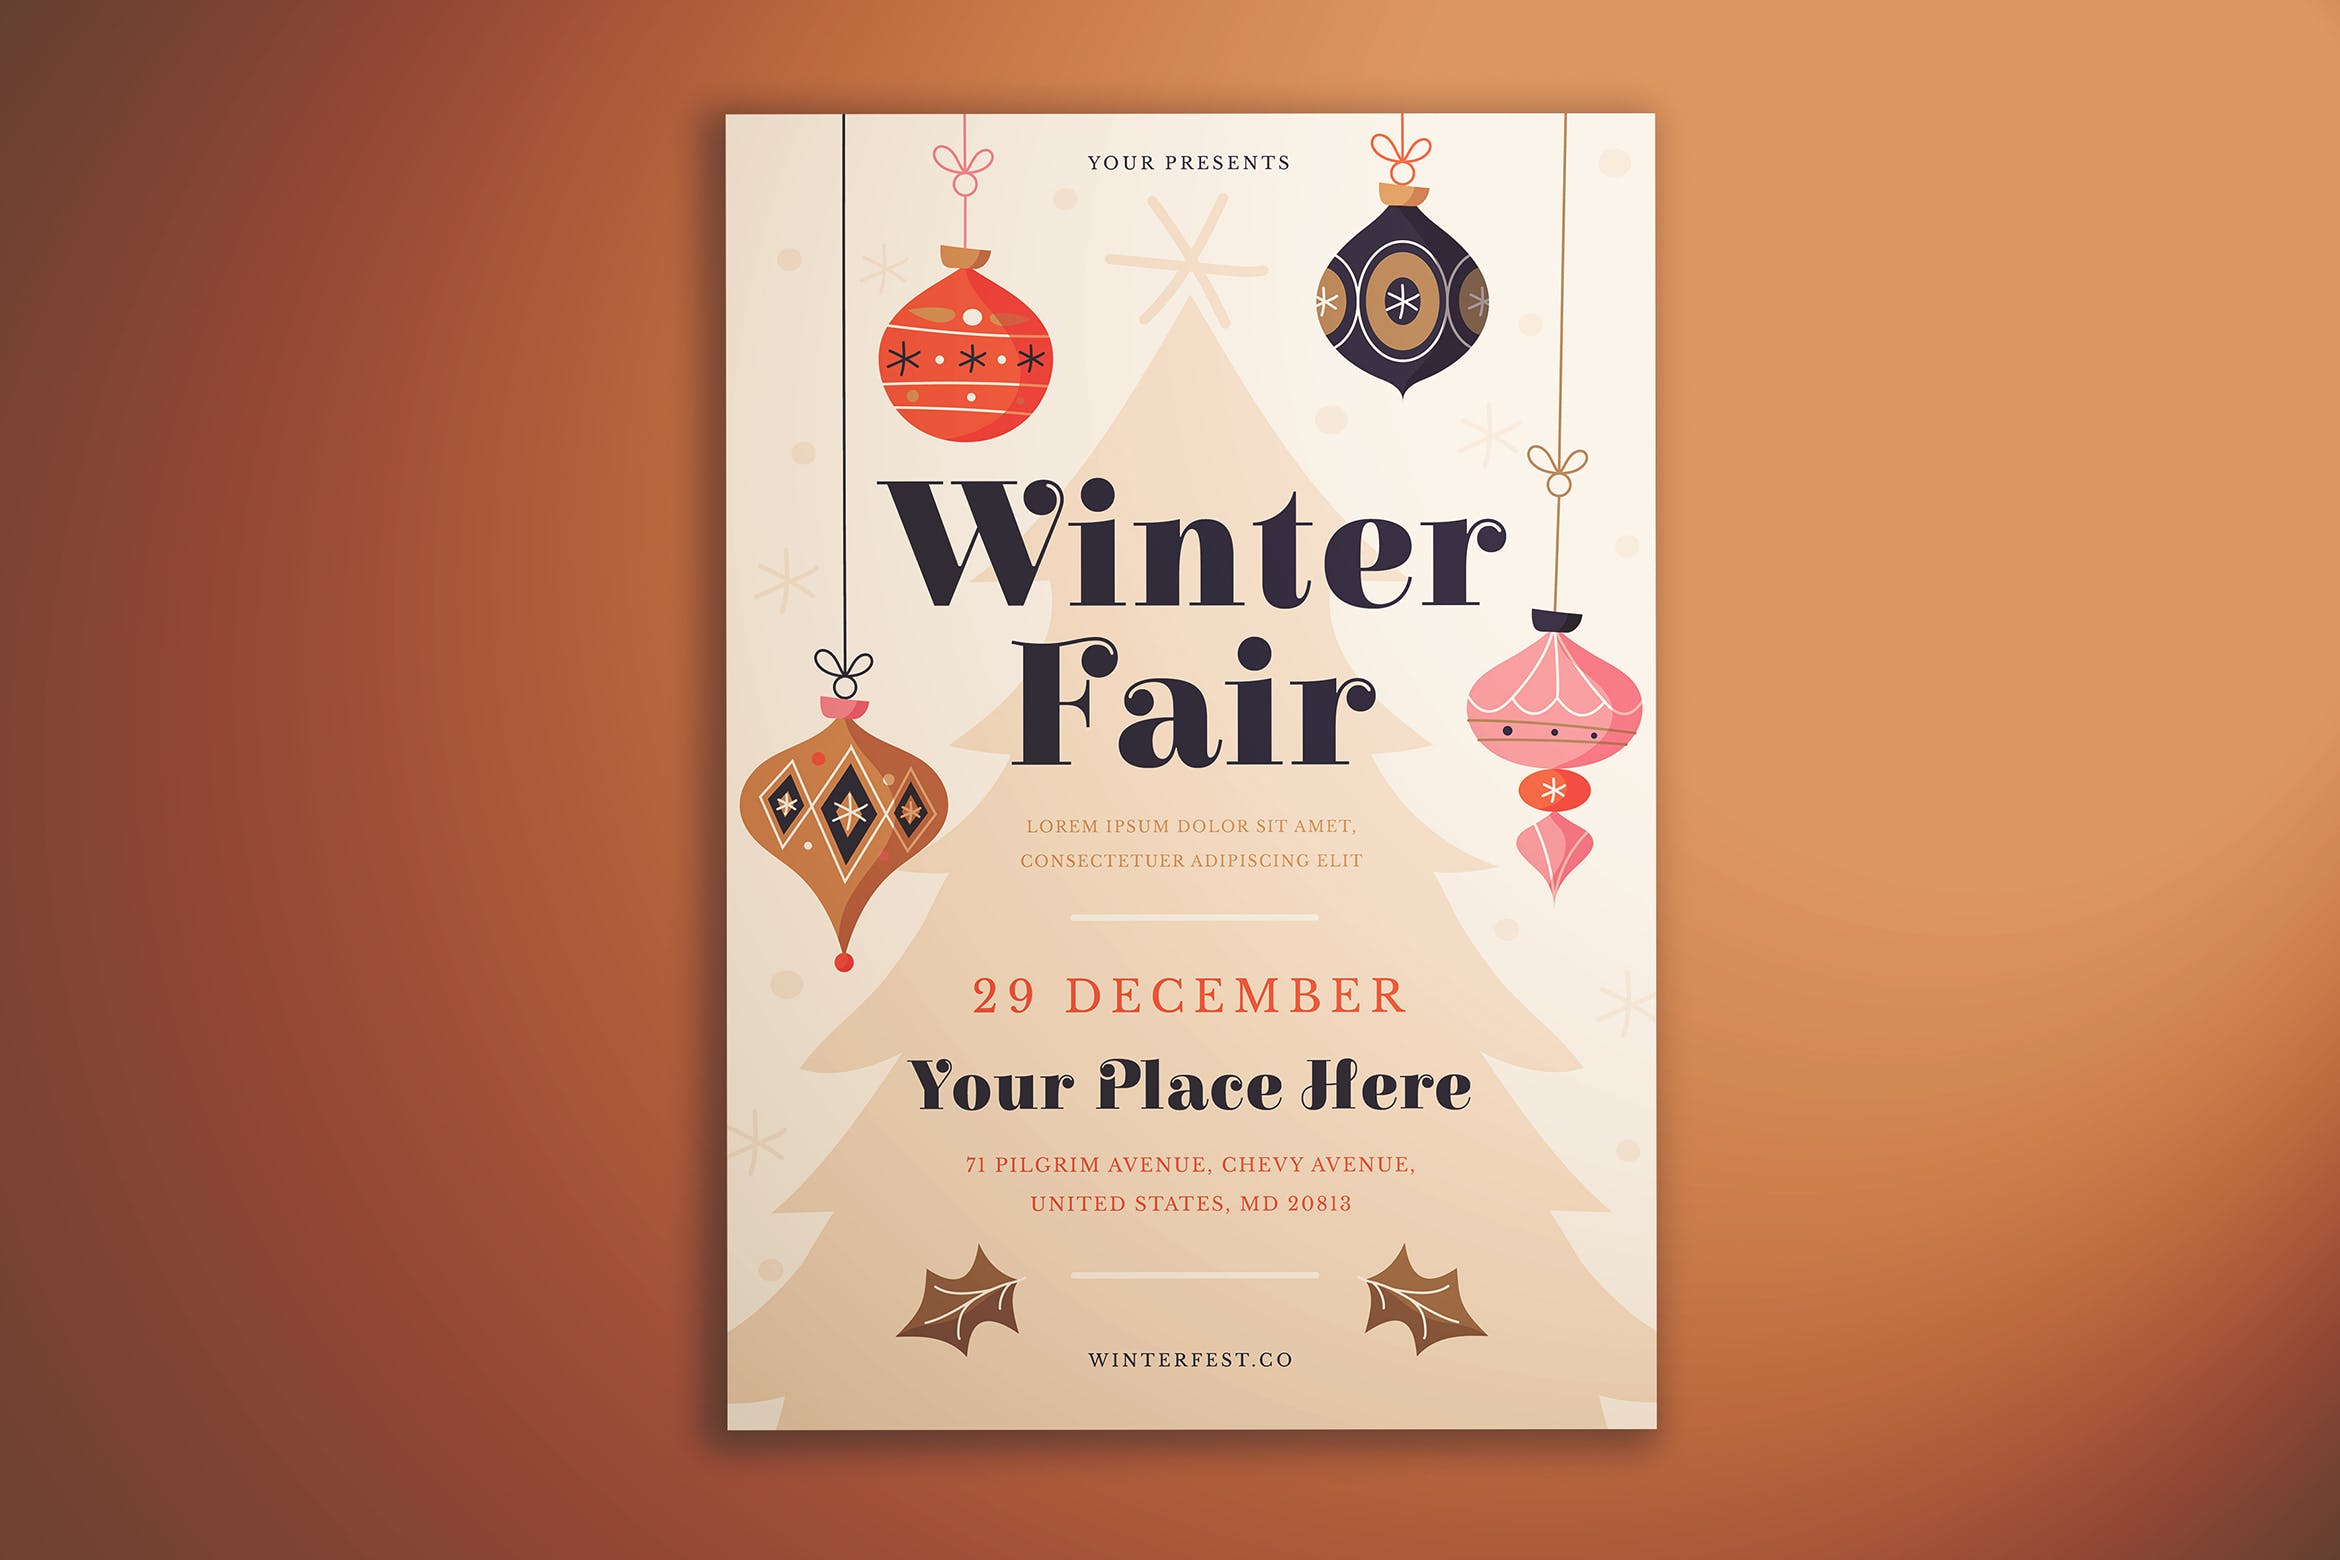 冬季博览会传单设计模板 Winter Fair Flyer插图